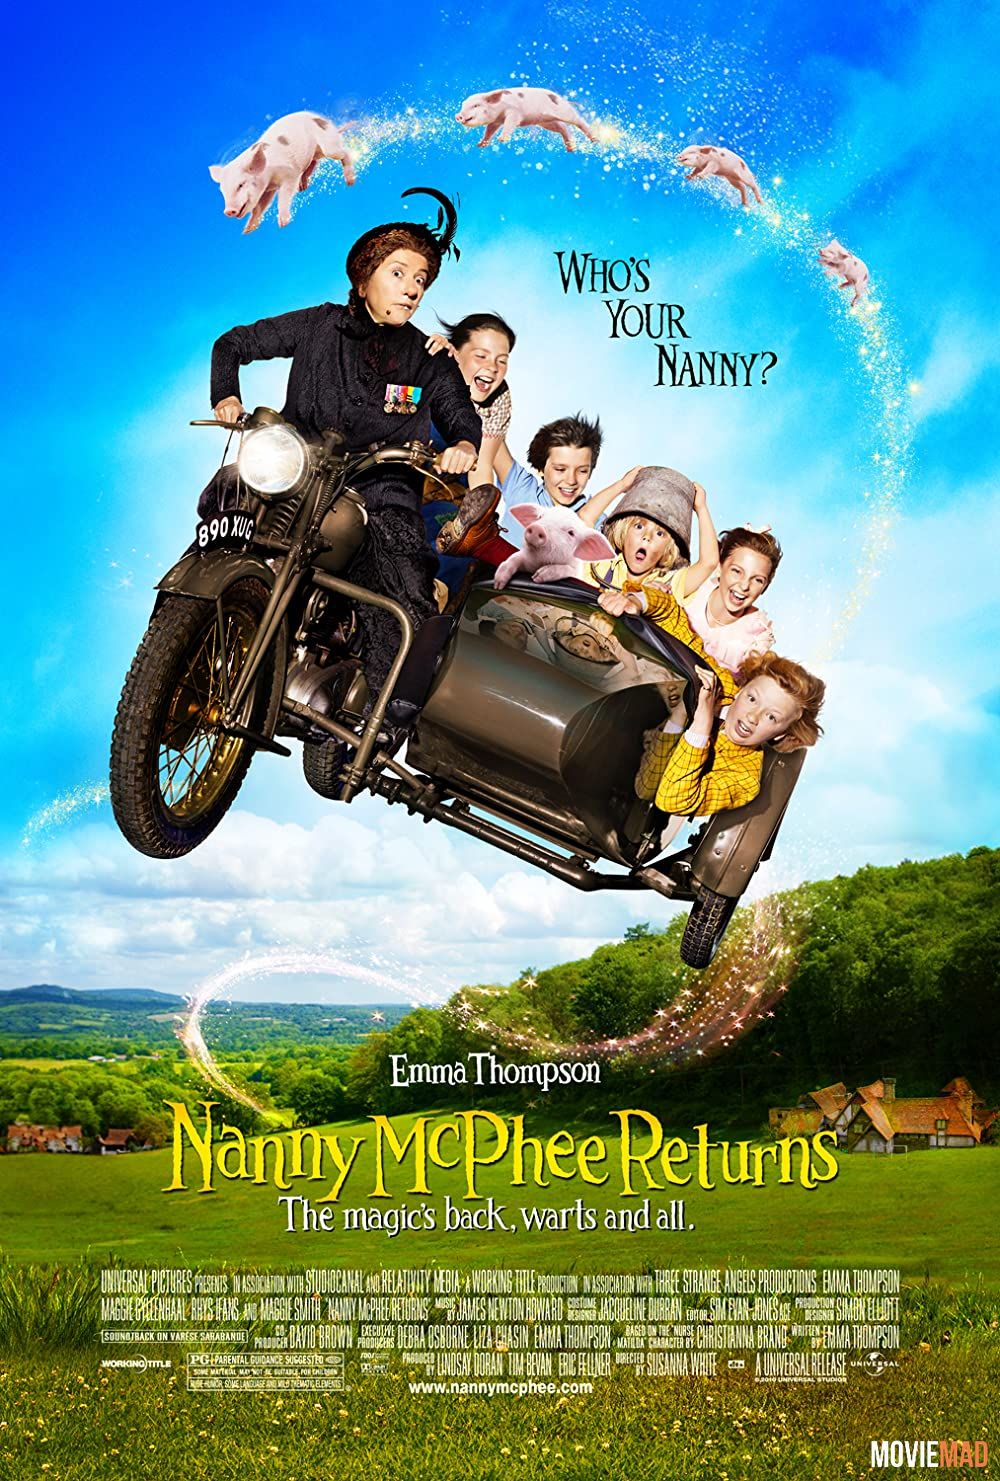 Nanny McPhee and the Big Bang 2010 Hindi Dubbed ORG BluRay Full Movie 1080p 720p 480p